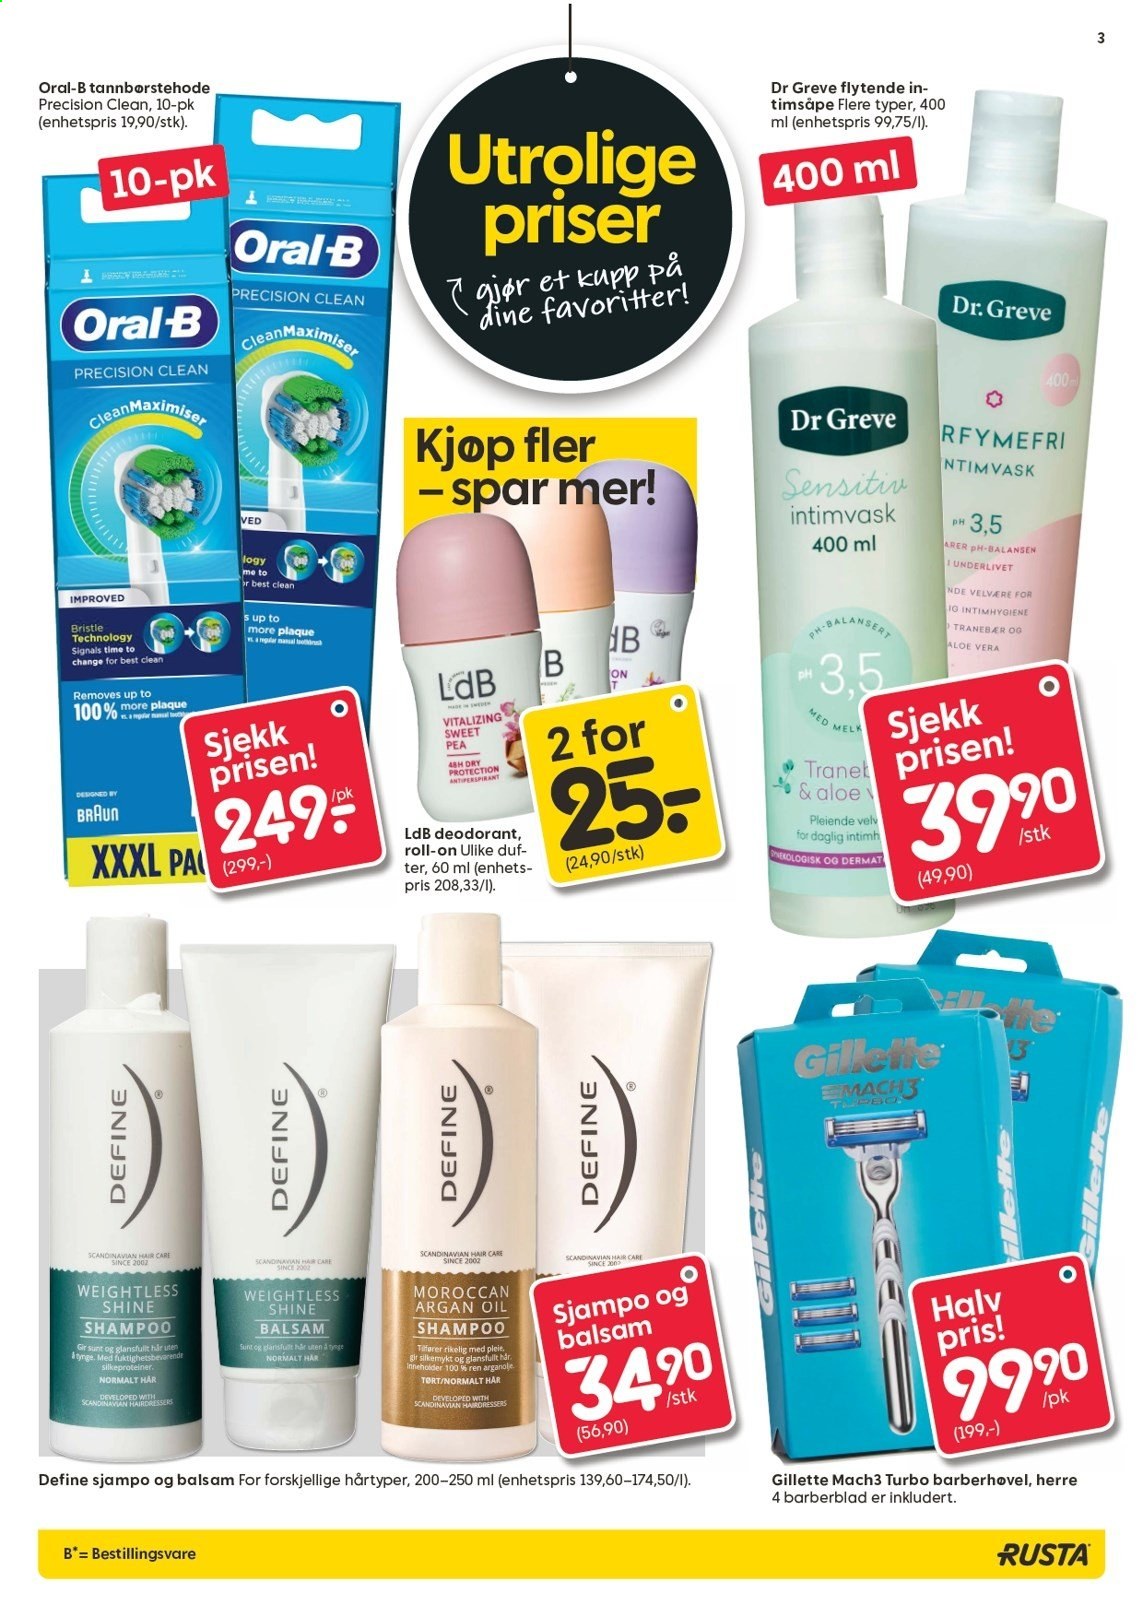 thumbnail - Kundeavis Rusta - 17.3.2021 - 23.3.2021 - Produkter fra tilbudsaviser - barberhøvel, Gillette, Dr Greve, Define, shampoo, Oral-b, intimvask, roll-on, deodorant. Side 3.